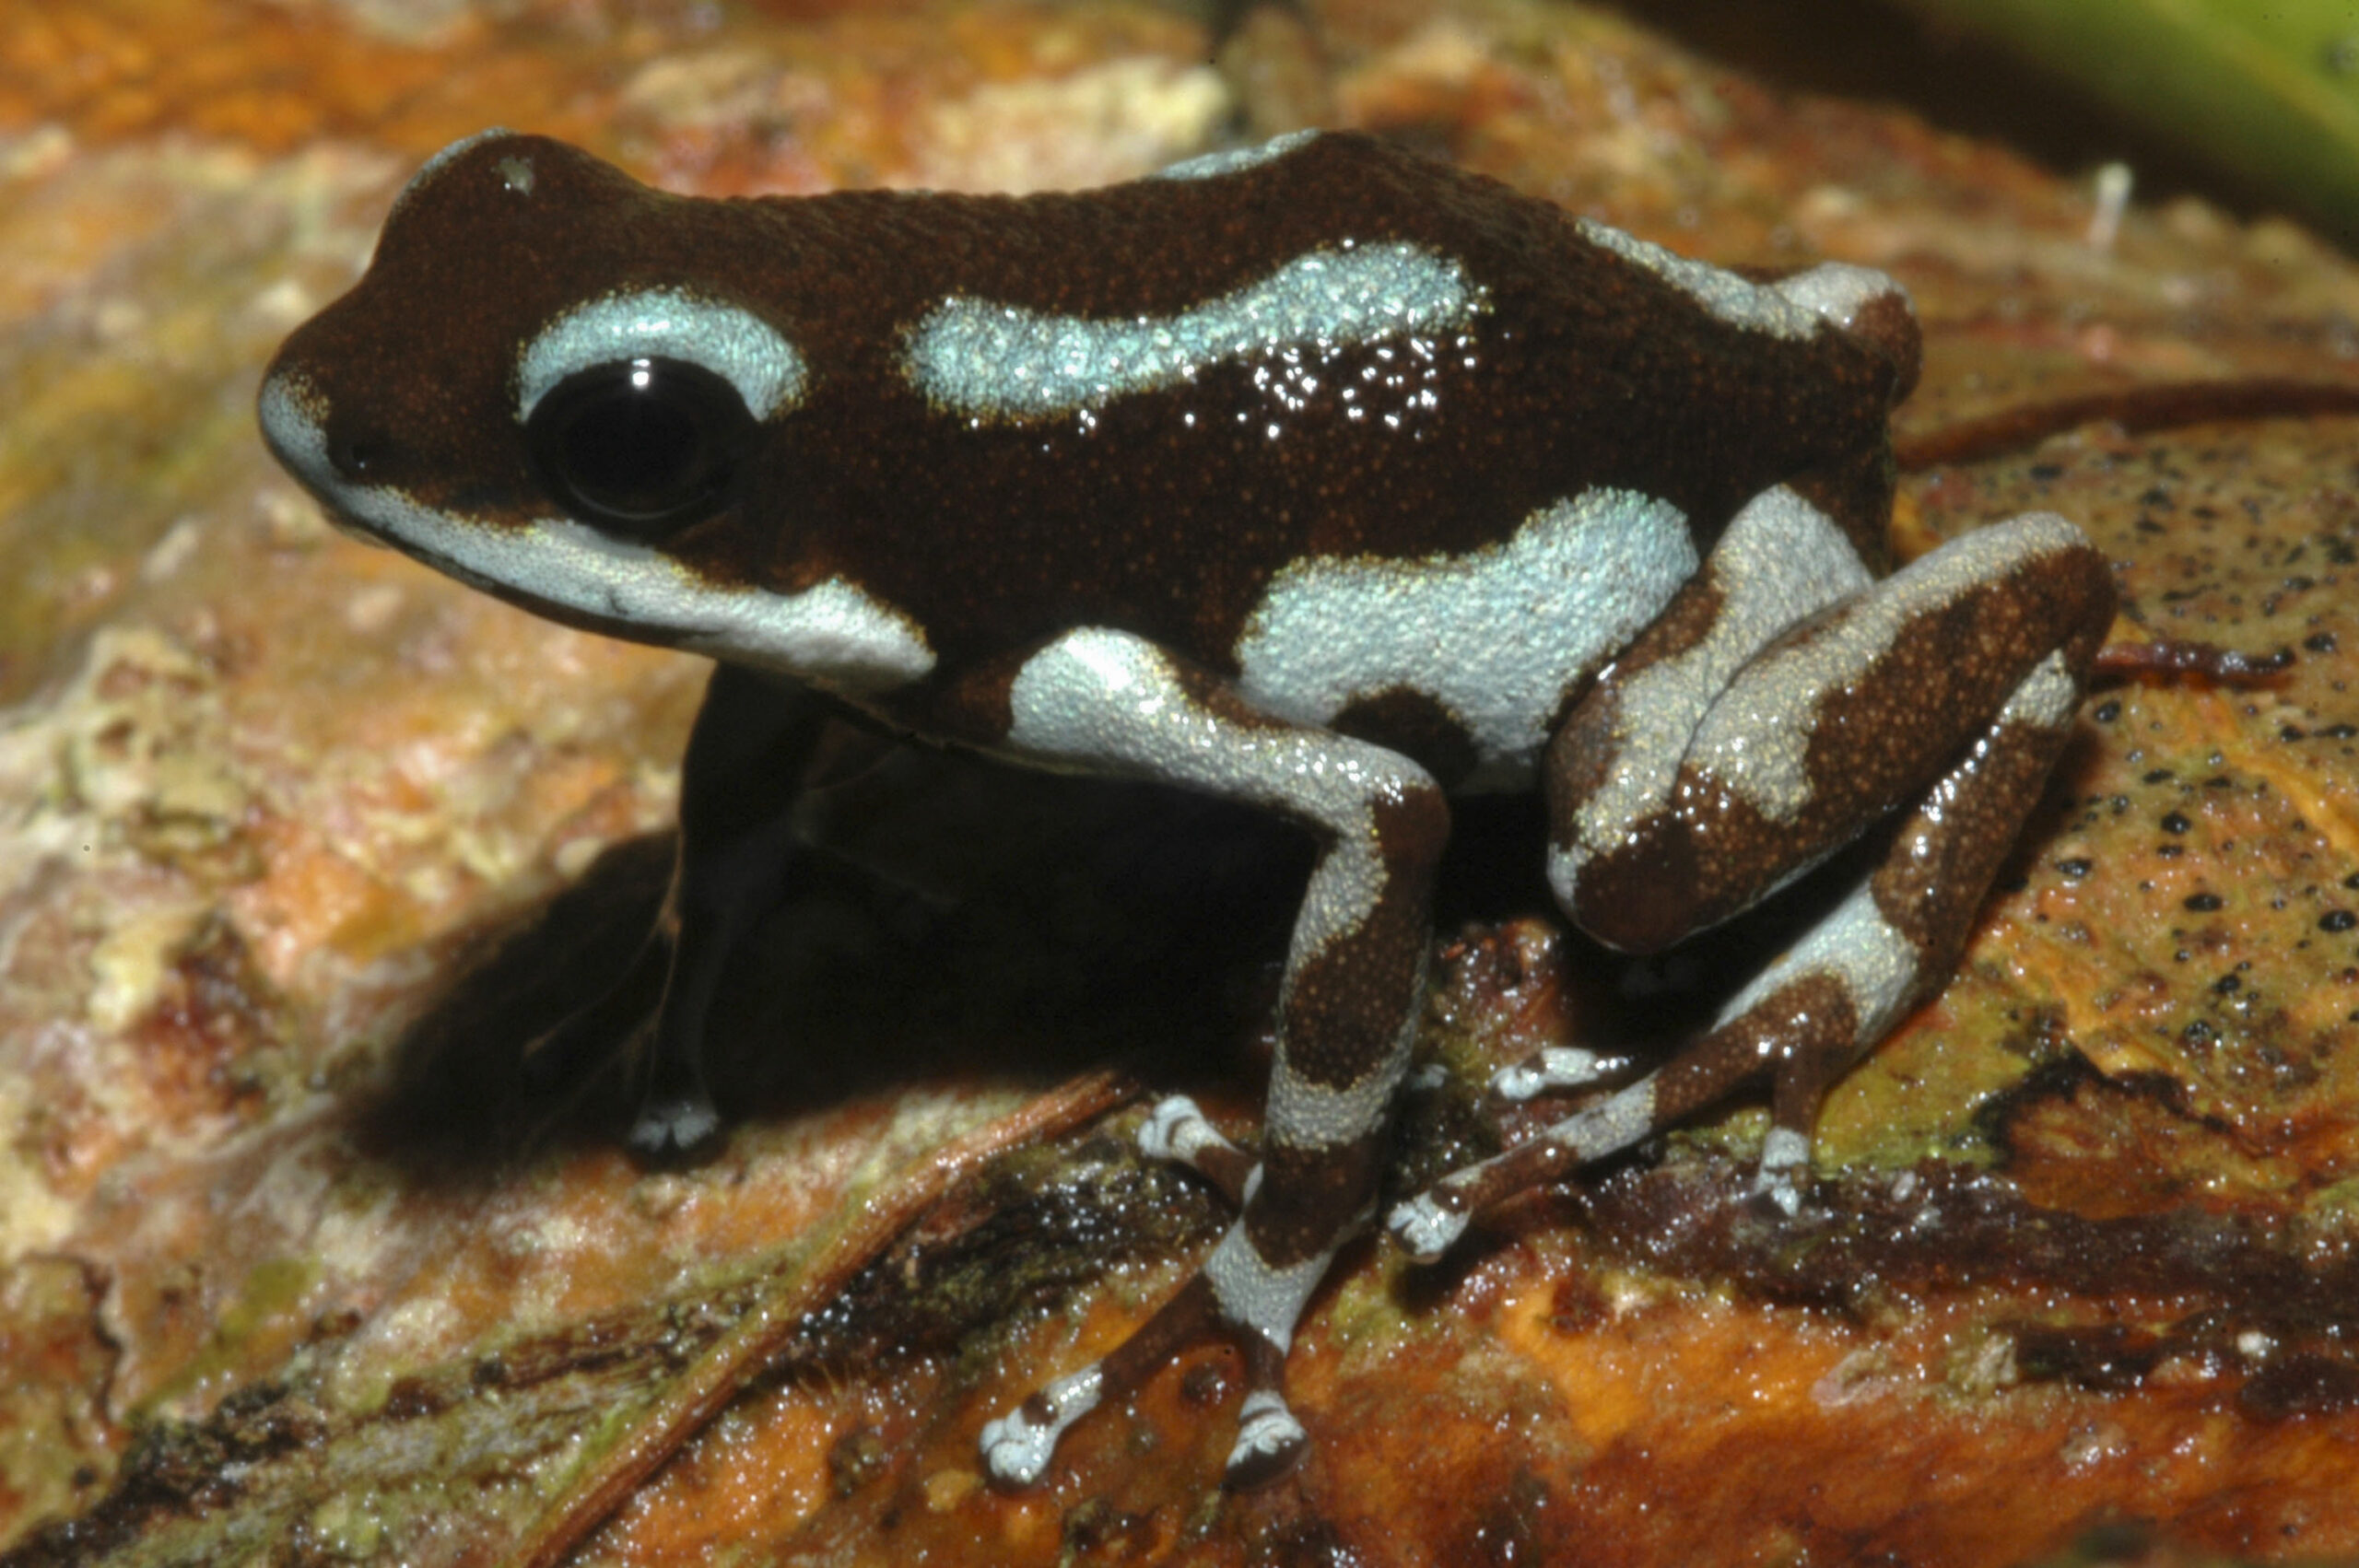 Oophaga pumilio from Loma Estrella, Bocas del Torro, Panama - by J. Van der Meulen.